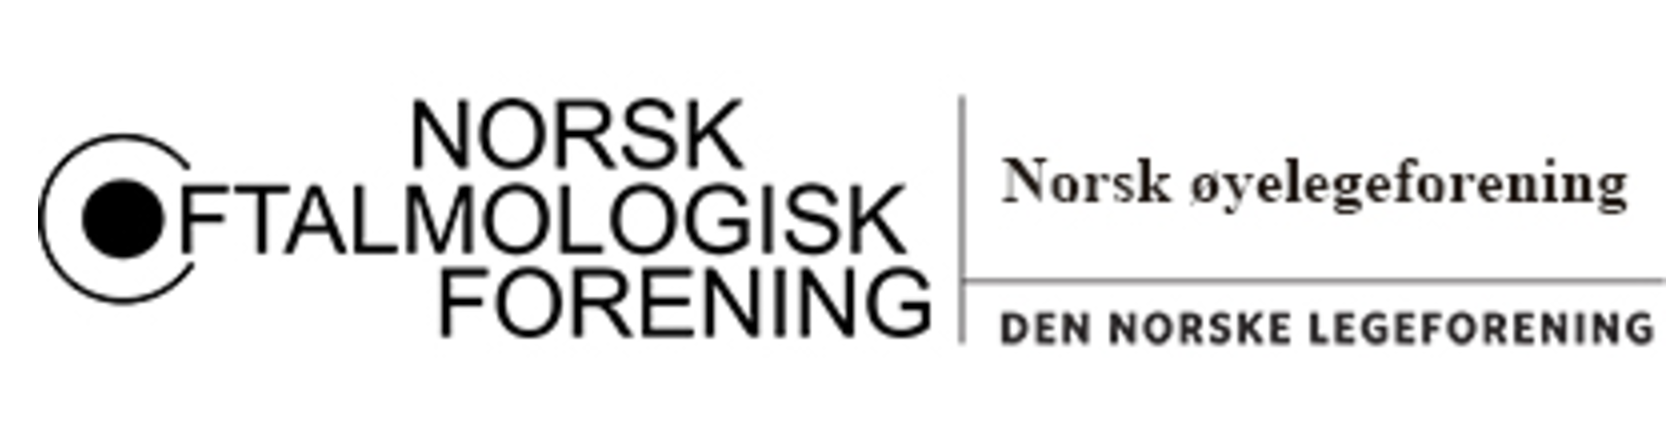 Logoen til Norsk Oftamologisk Forening i sort/hvitt